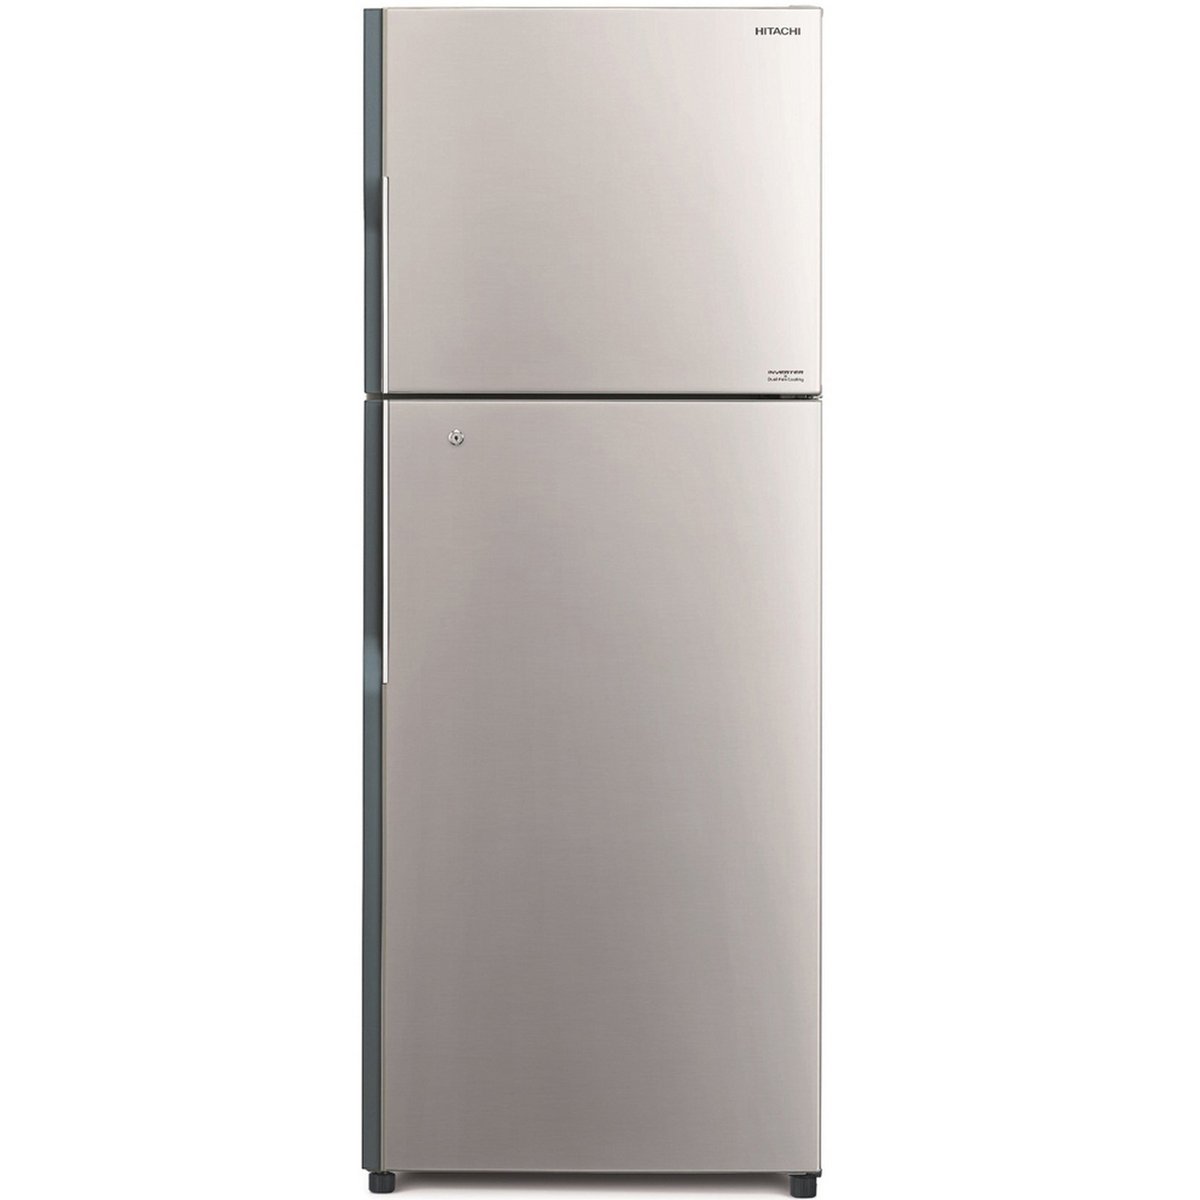 Hitachi Double Door Refrigerator RH330PK7KBSL 330Ltr